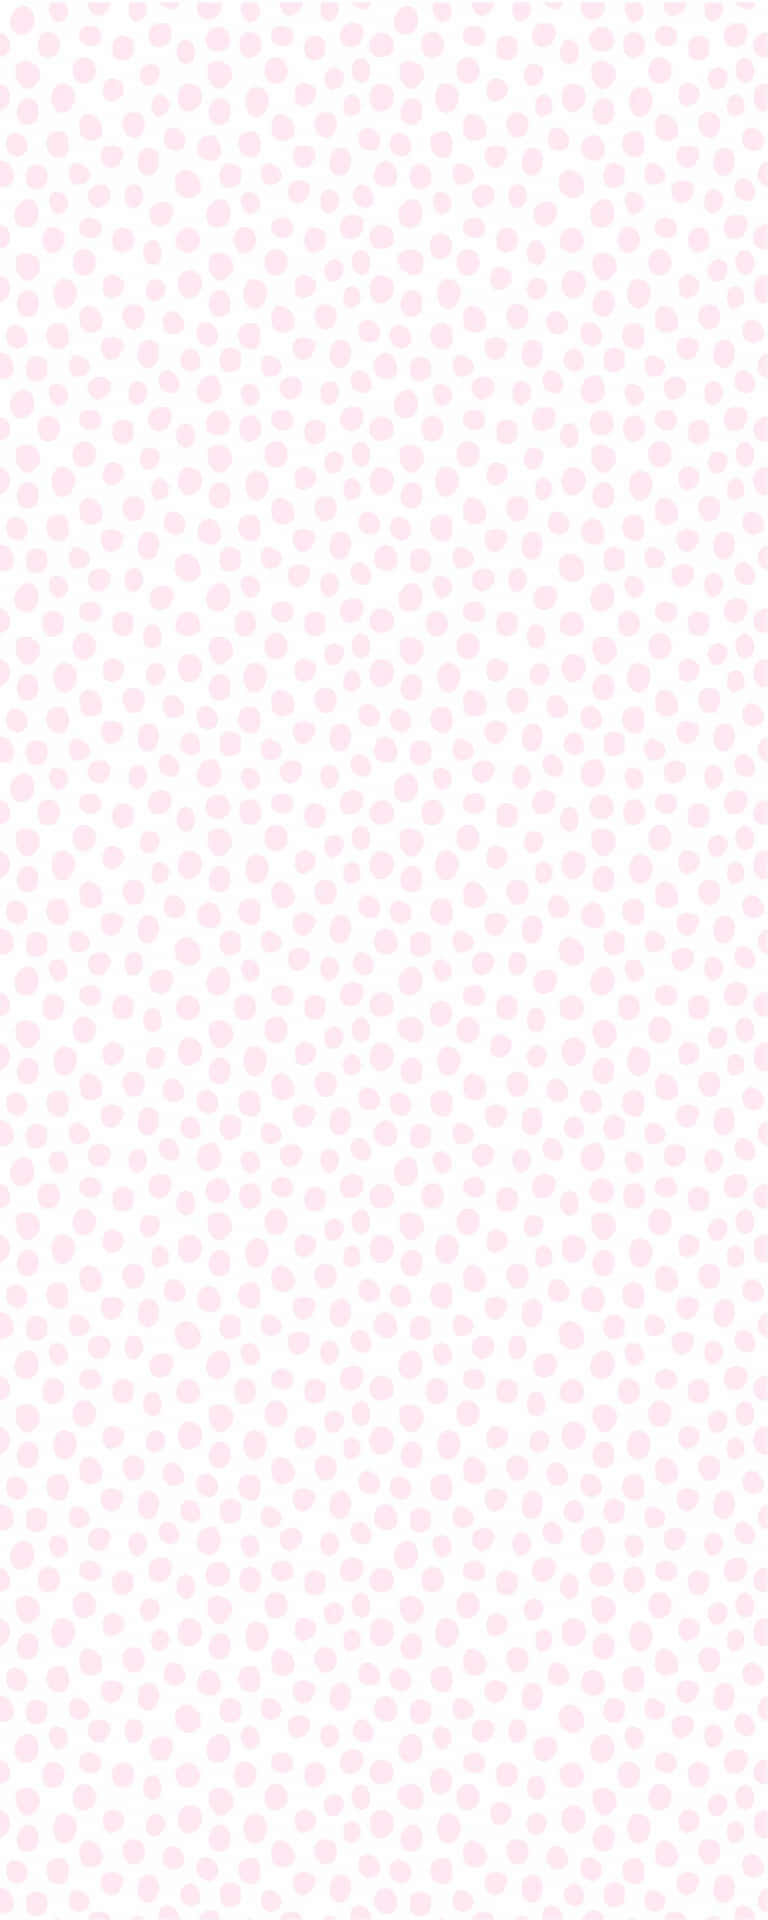 Erhellensie Ihren Tag Mit Diesem Fröhlichen Rosafarbenen Und Weißen Polka Dot Muster! Wallpaper